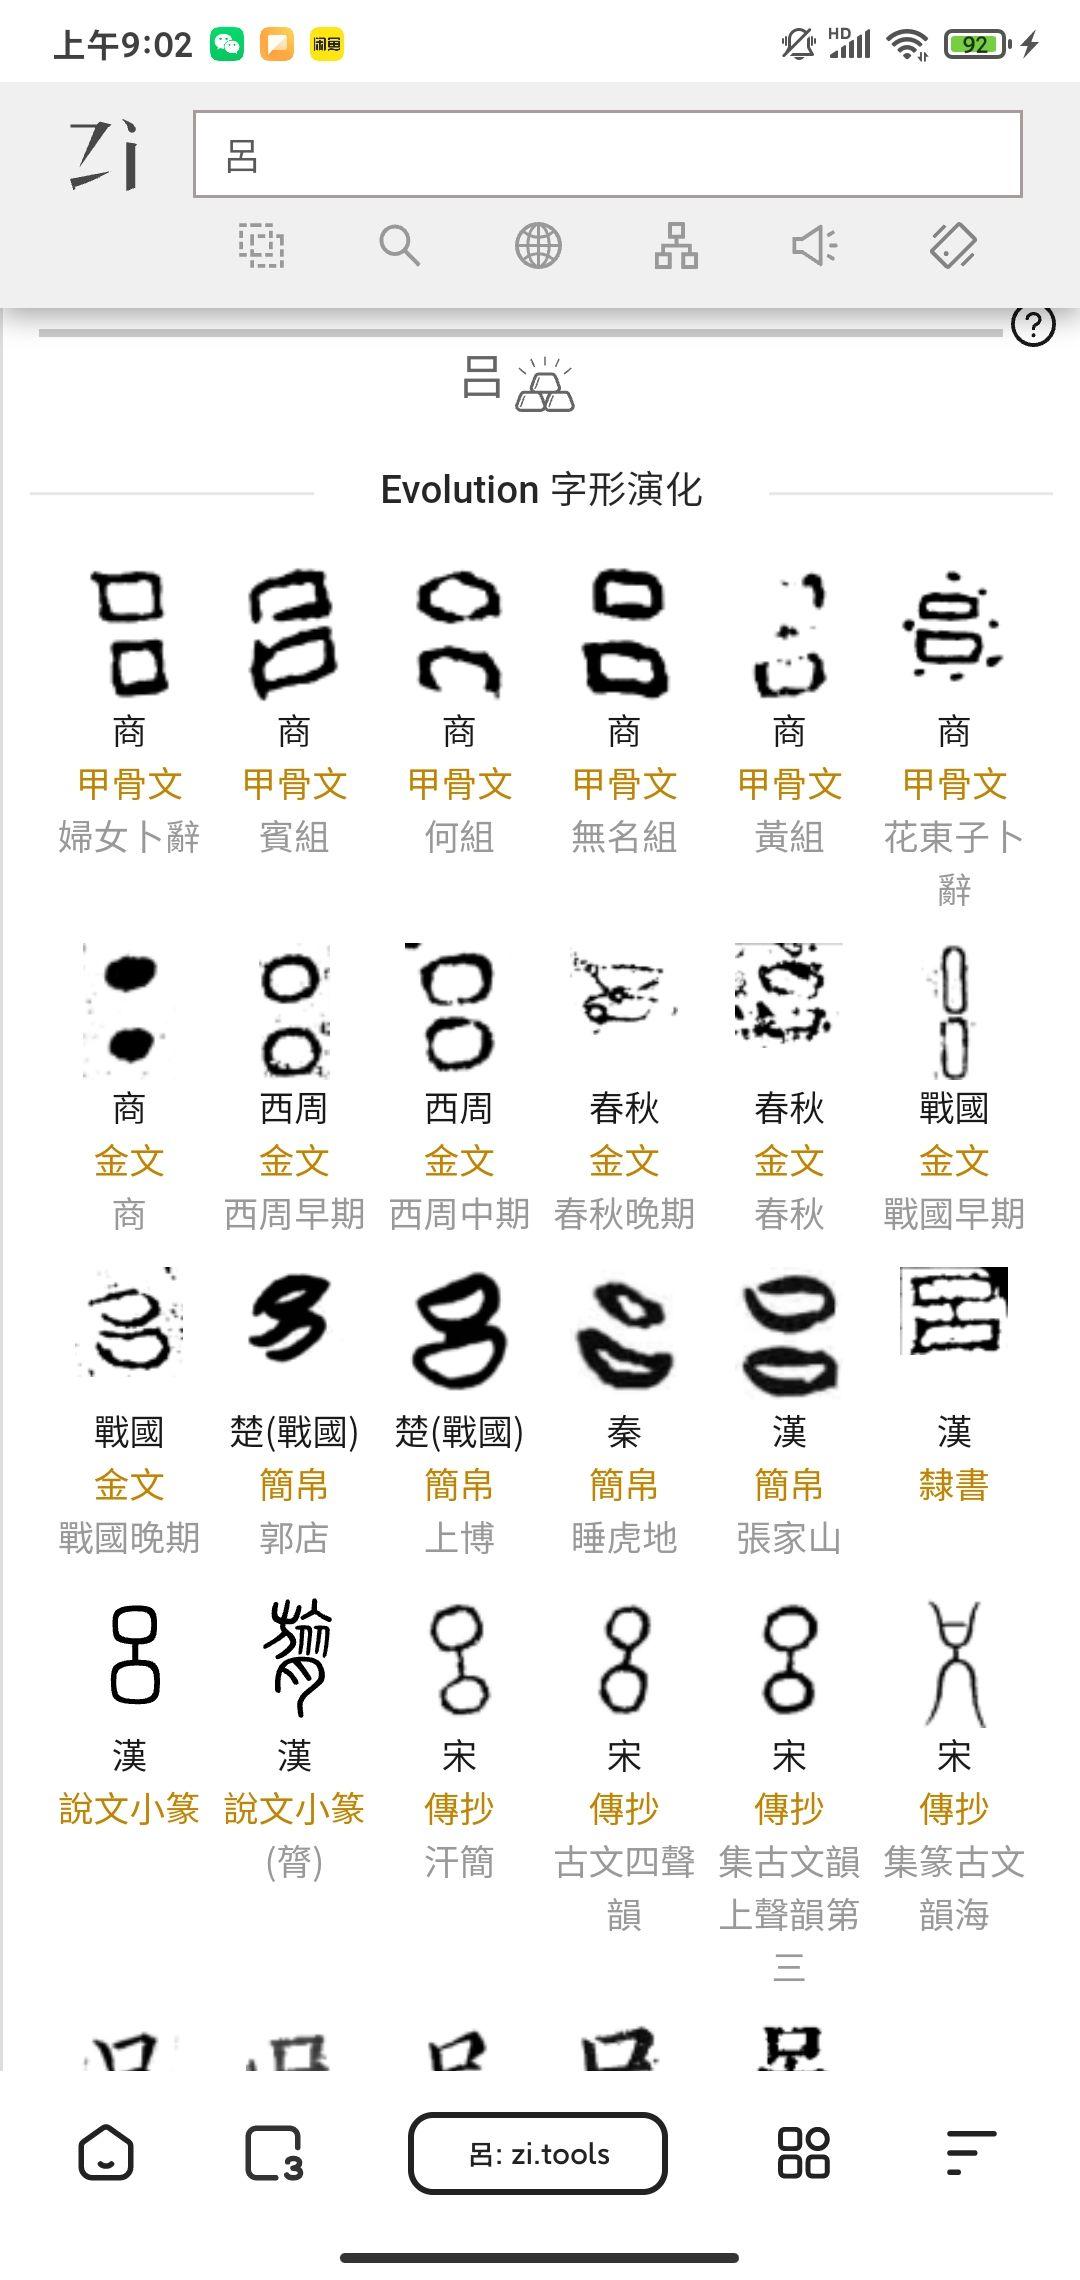 金的汉字演变过程图片